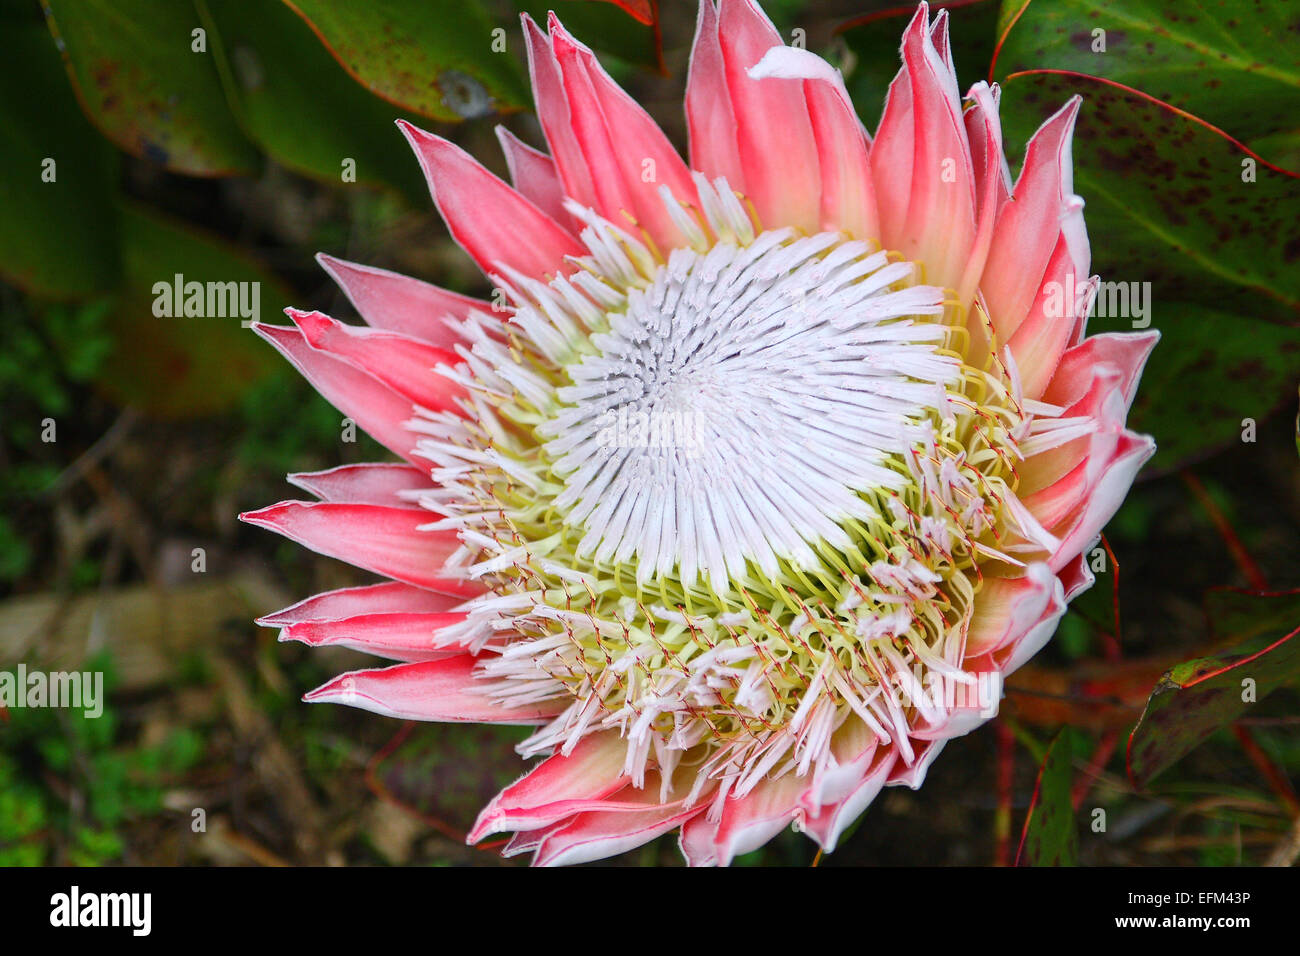 King protea (Protea cynaroides) flower head Stock Photo